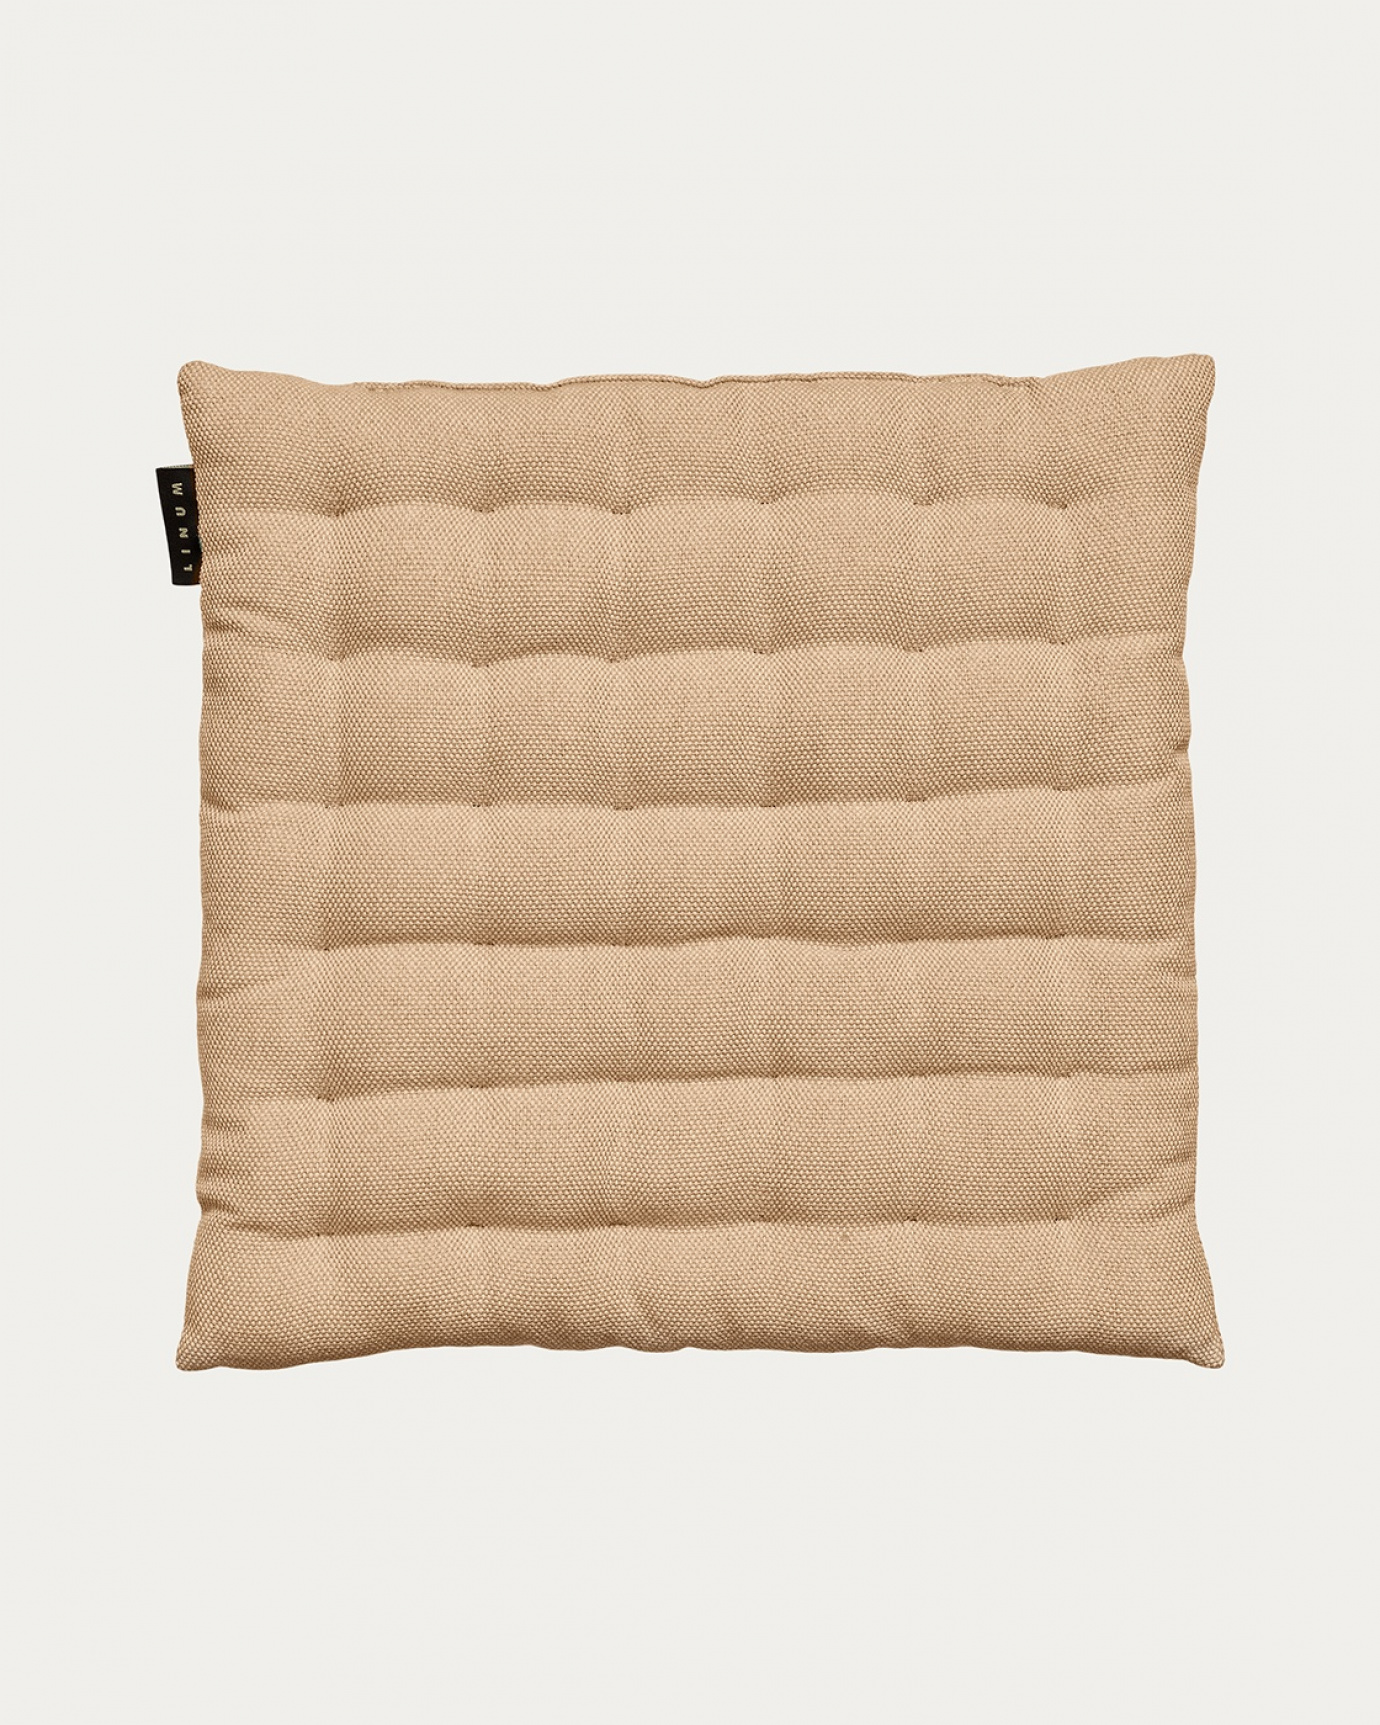 Immagine prodotto marrone cammello PEPPER cuscini sedie di cotone con imbottitura in poliestere di LINUM DESIGN. Dimensioni 40x40 cm.